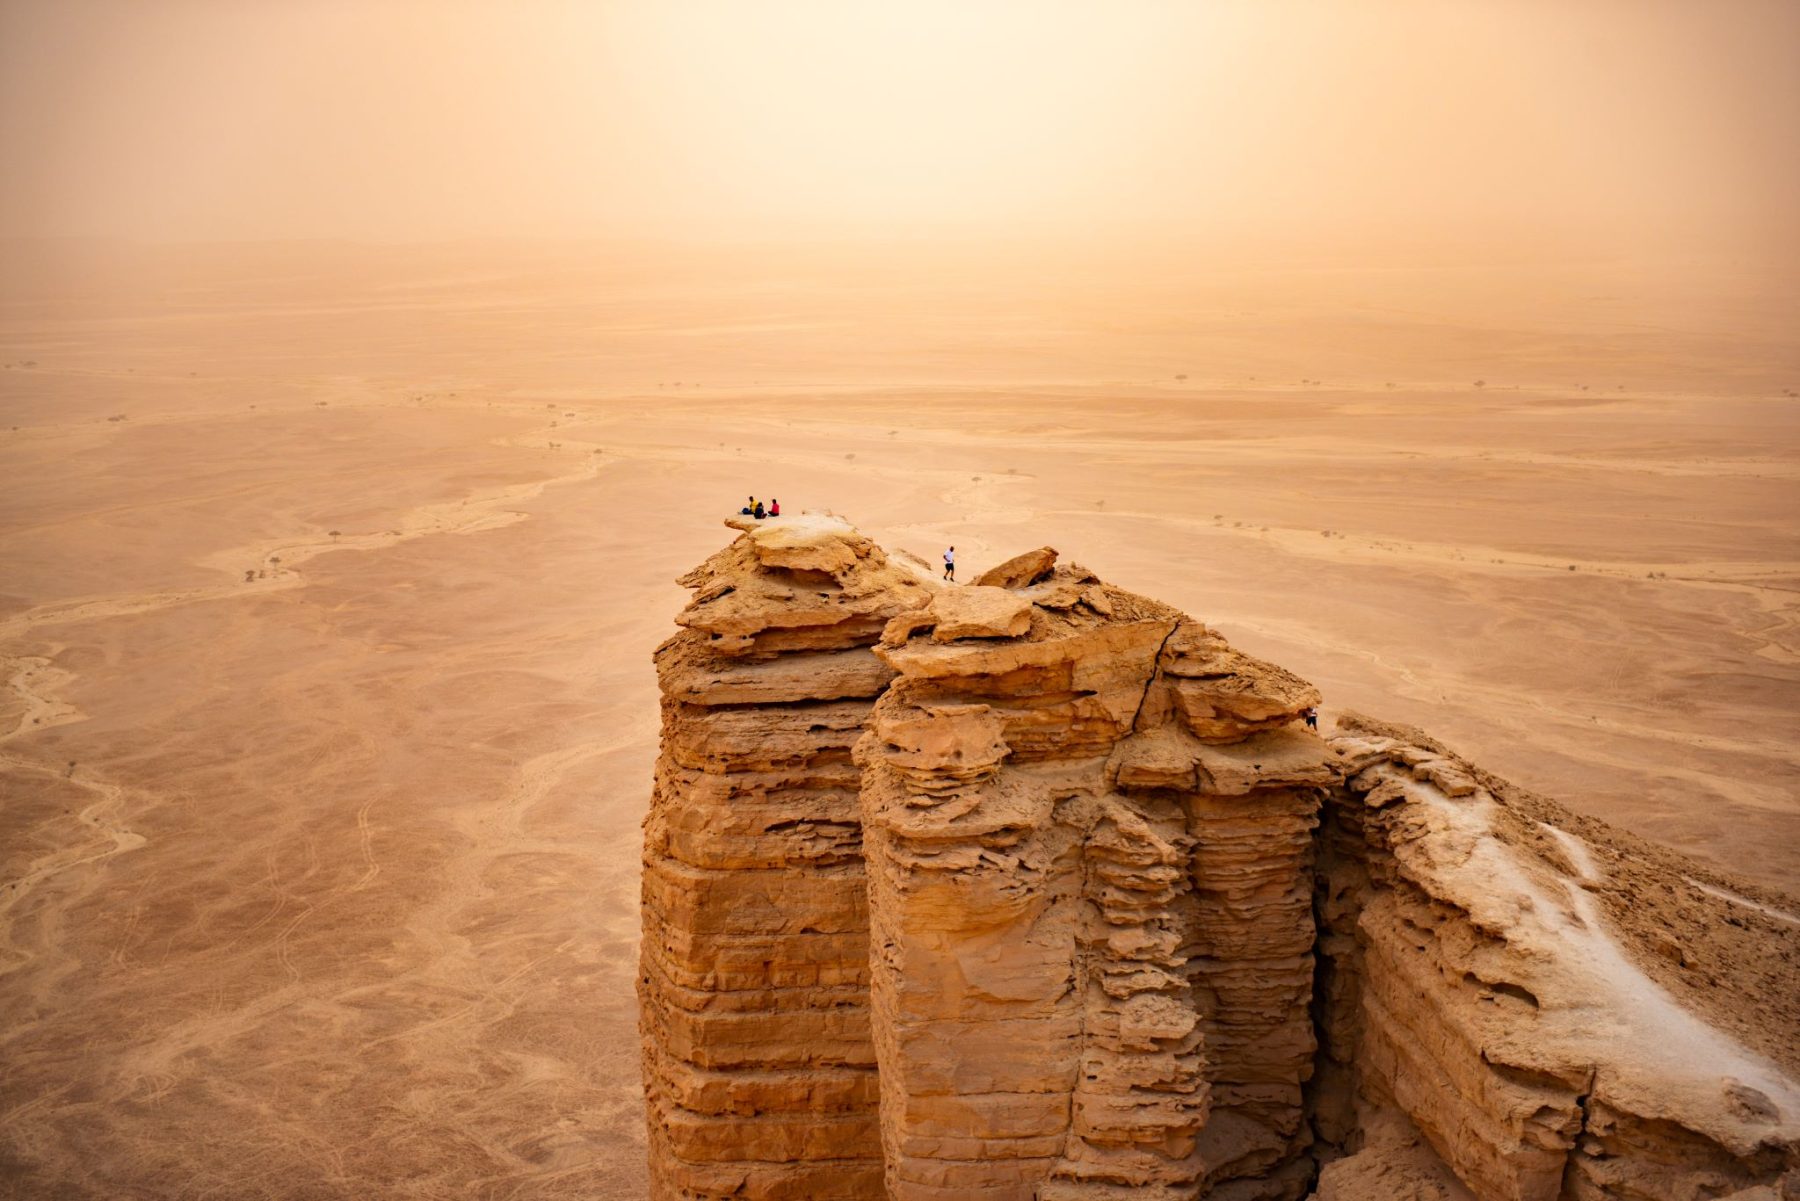 Op de rand van de wereld. Outdoor activiteiten in Saoedi-Arabië - The Edge of the World